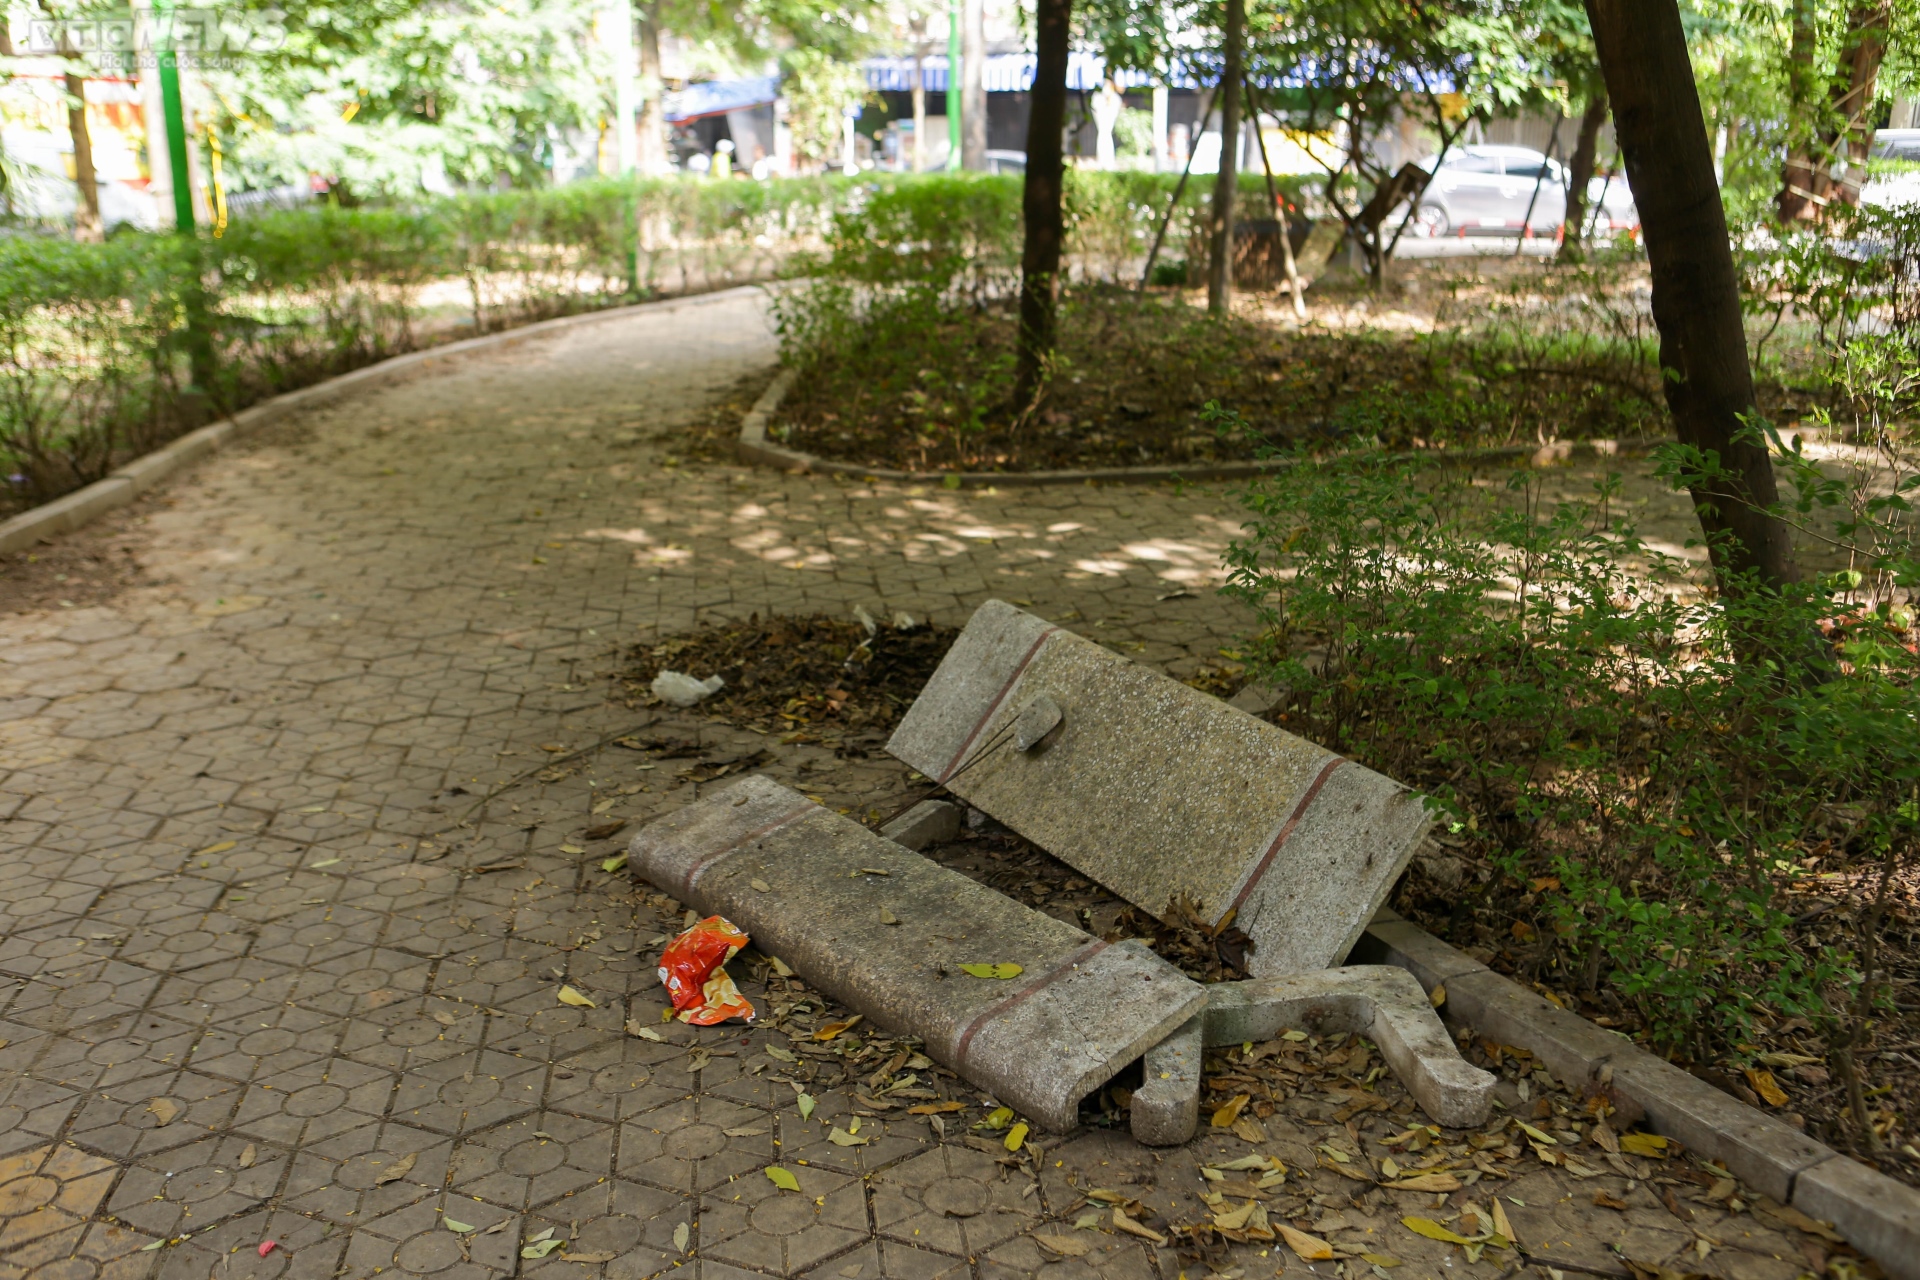 Vườn hoa 52 tỷ đồng ở Hà Nội xuống cấp trầm trọng, thành nơi đổ rác - Ảnh 3.